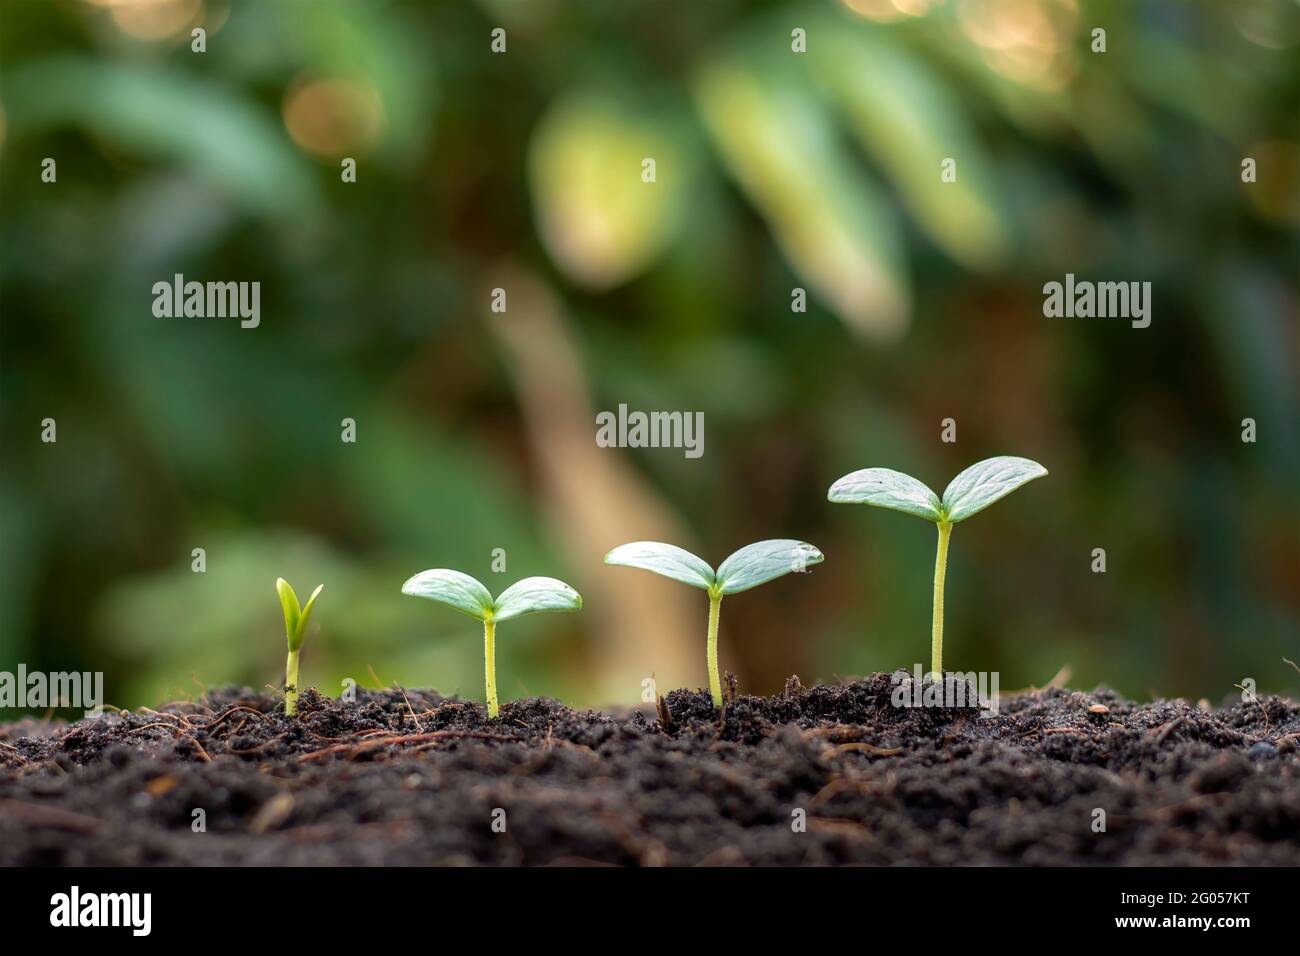 Kleine Bäume mit grünen Blättern wachsen natürlich, das Konzept der Landwirtschaft und nachhaltiges Pflanzenwachstum. Stockfoto